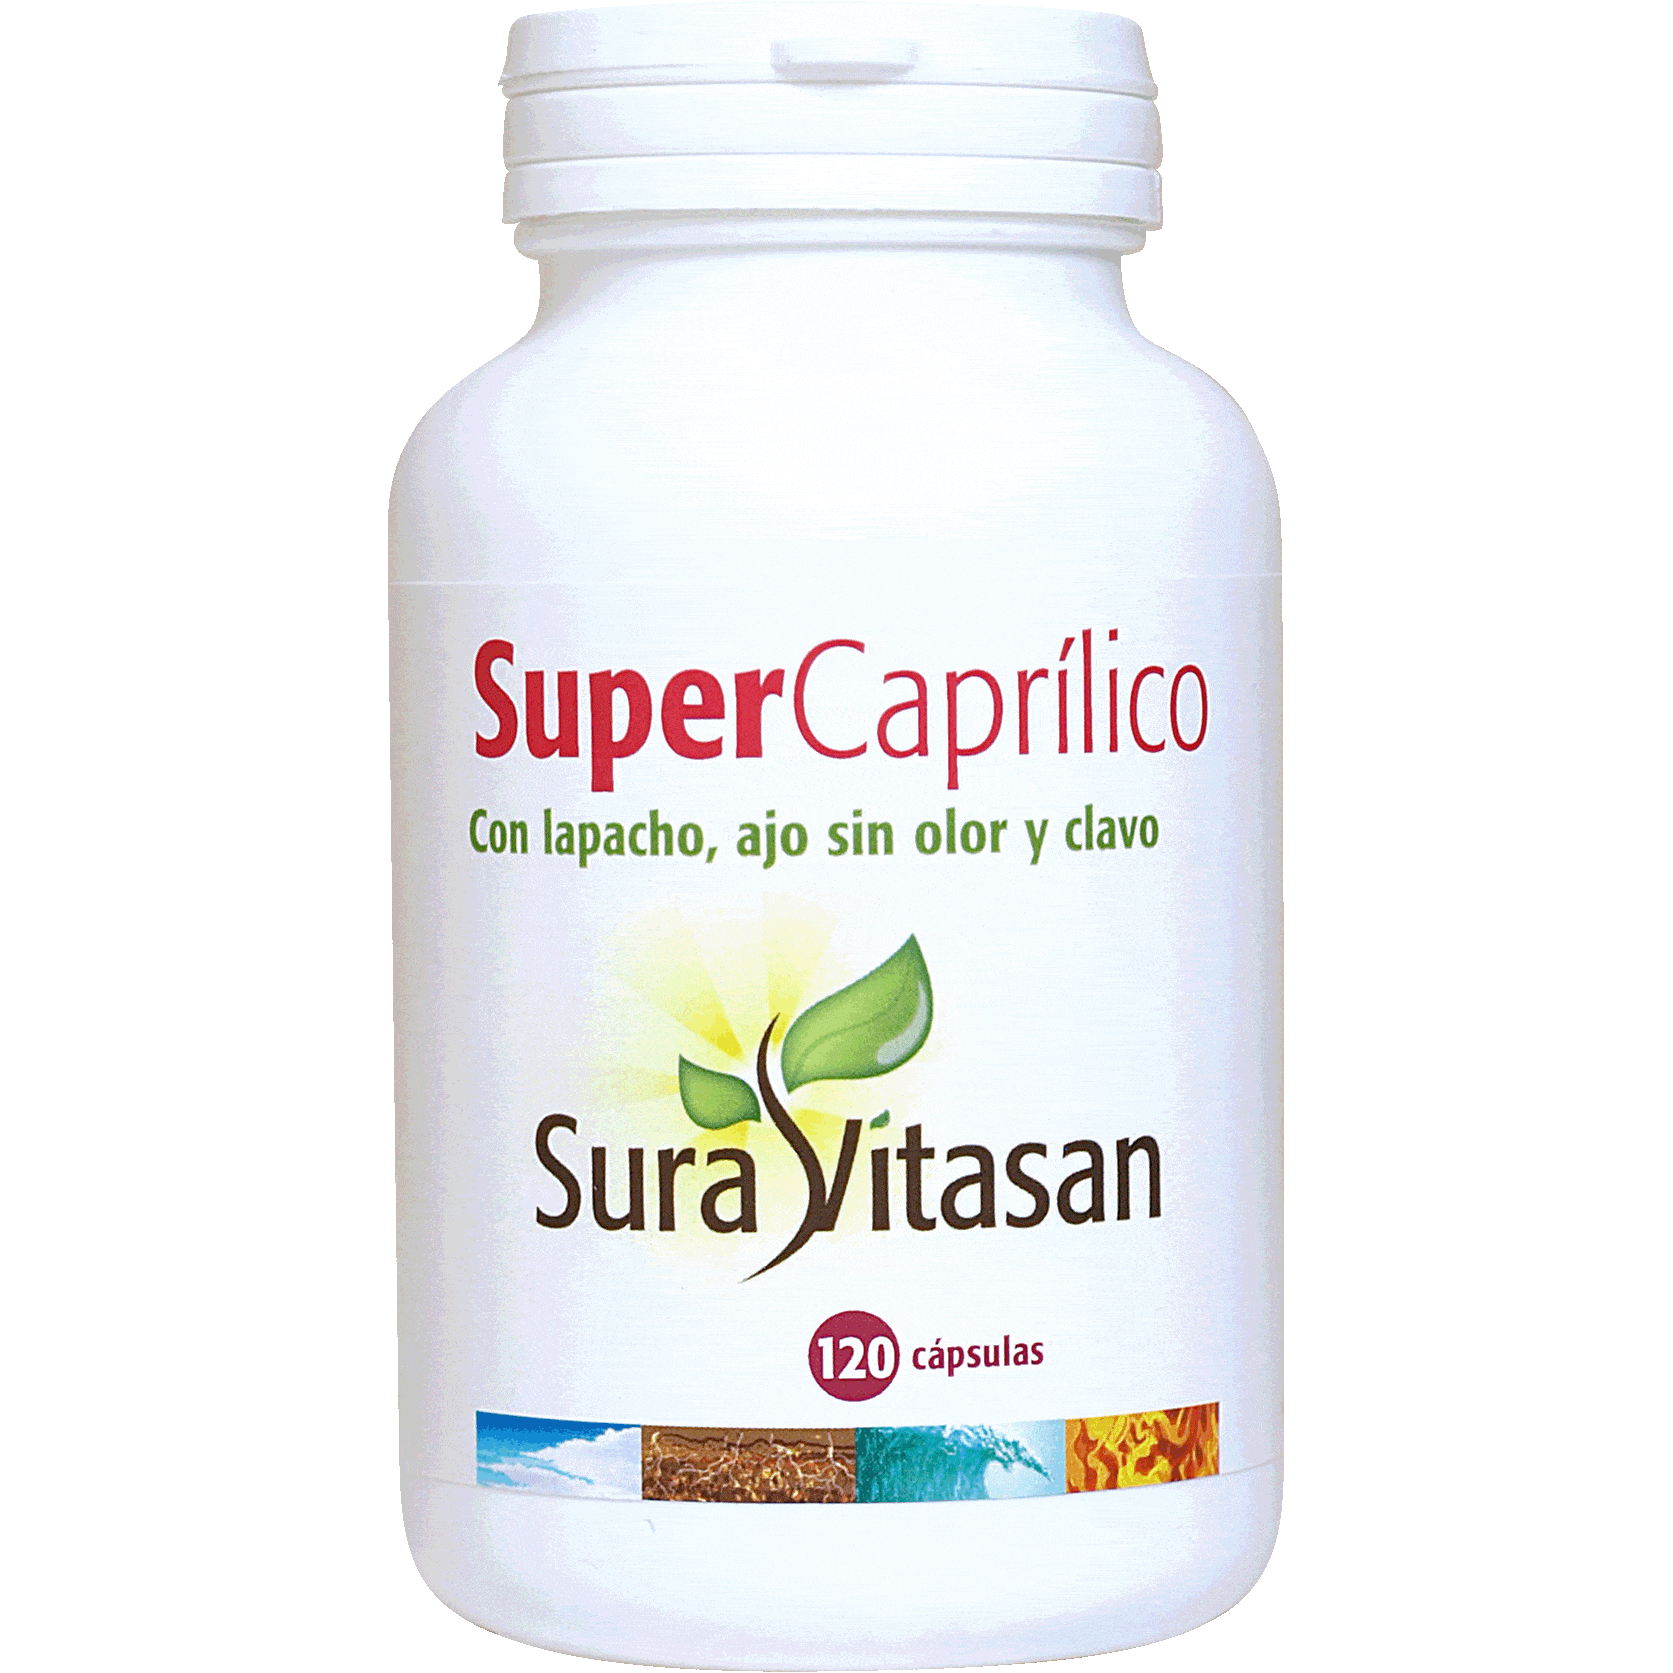 Super Caprilico 120 Capsulas | Sura Vitasan - Dietetica Ferrer